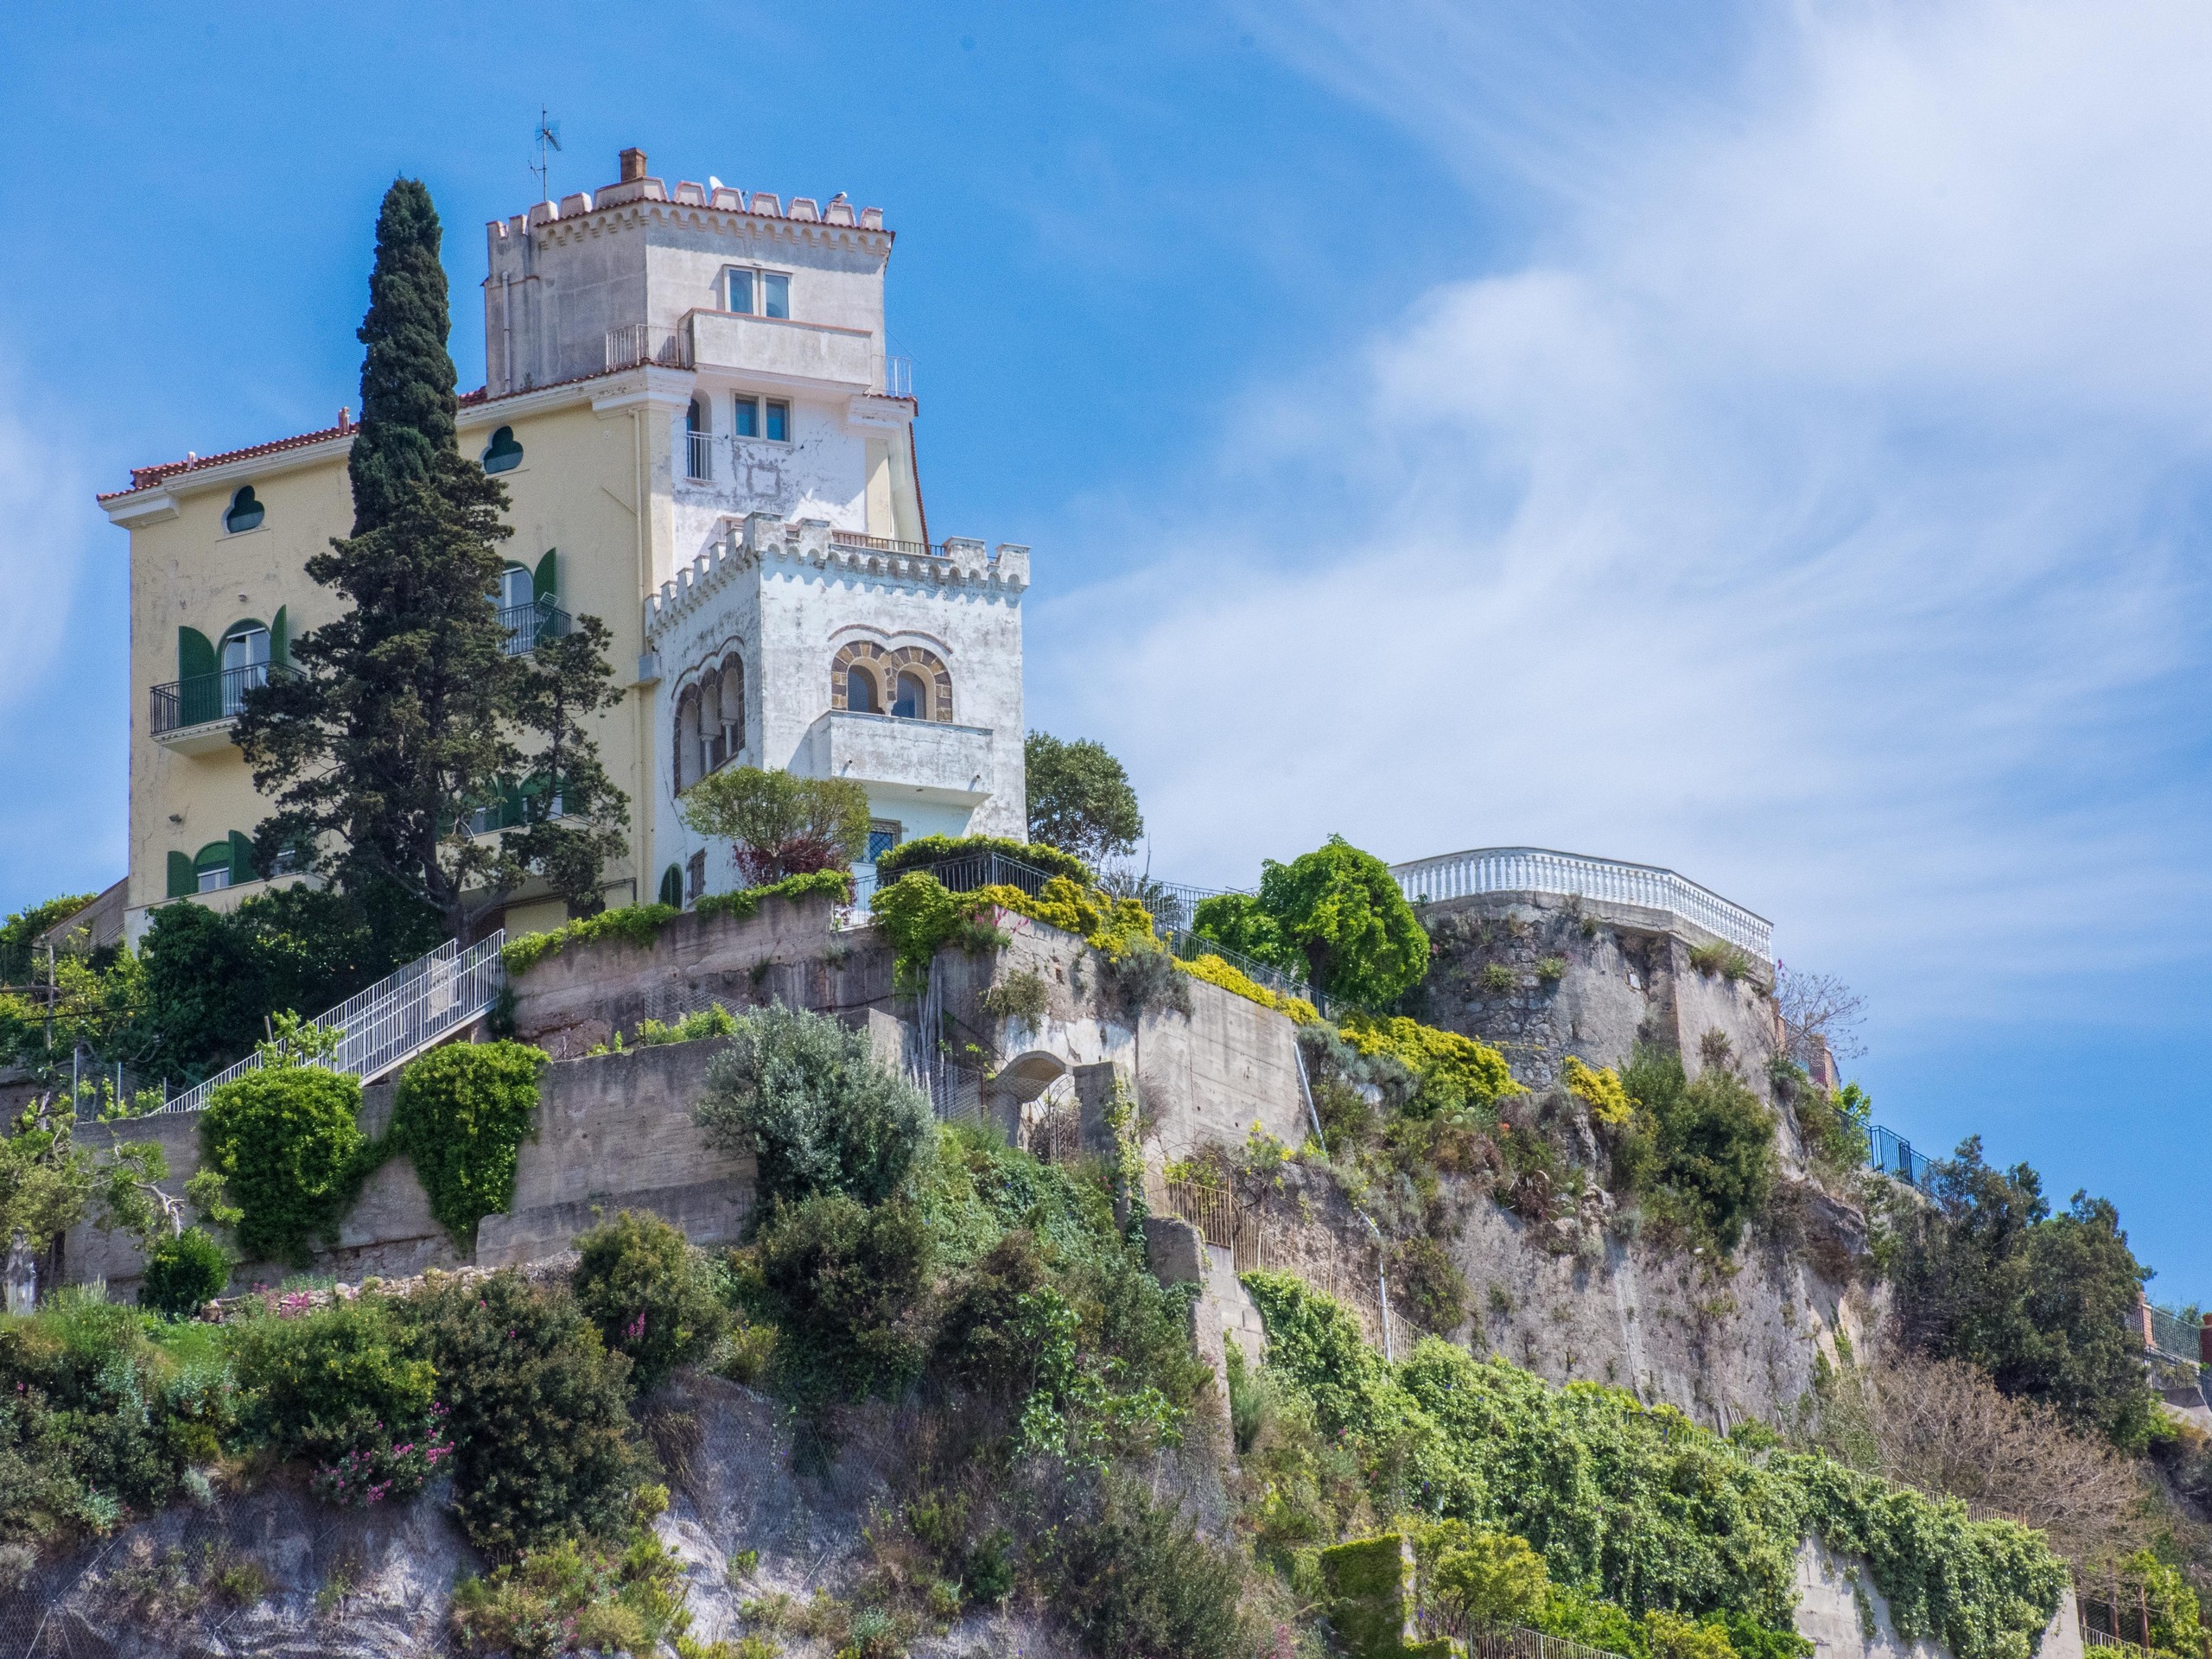 Beautiful castle on the hill near Amalfi Coast